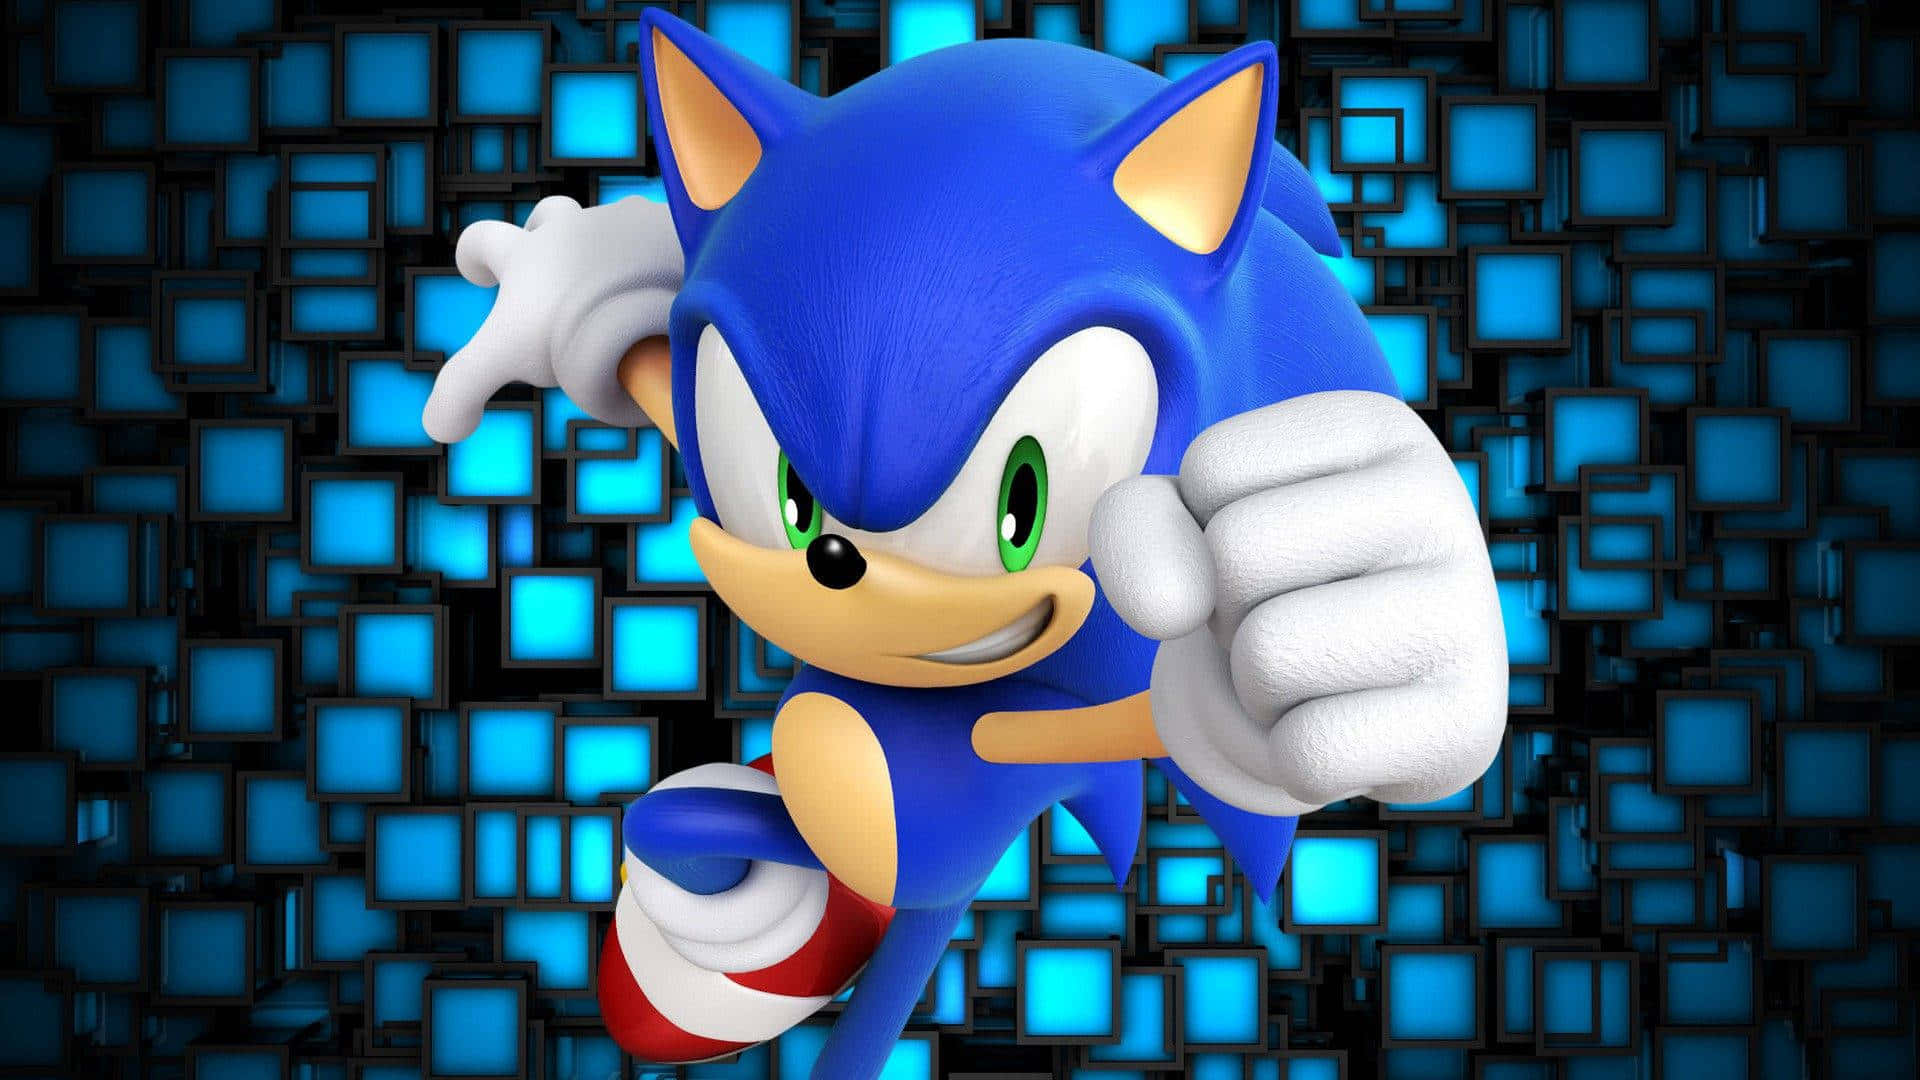 Explorea Future Inovador Com O Sonic The Hedgehog!